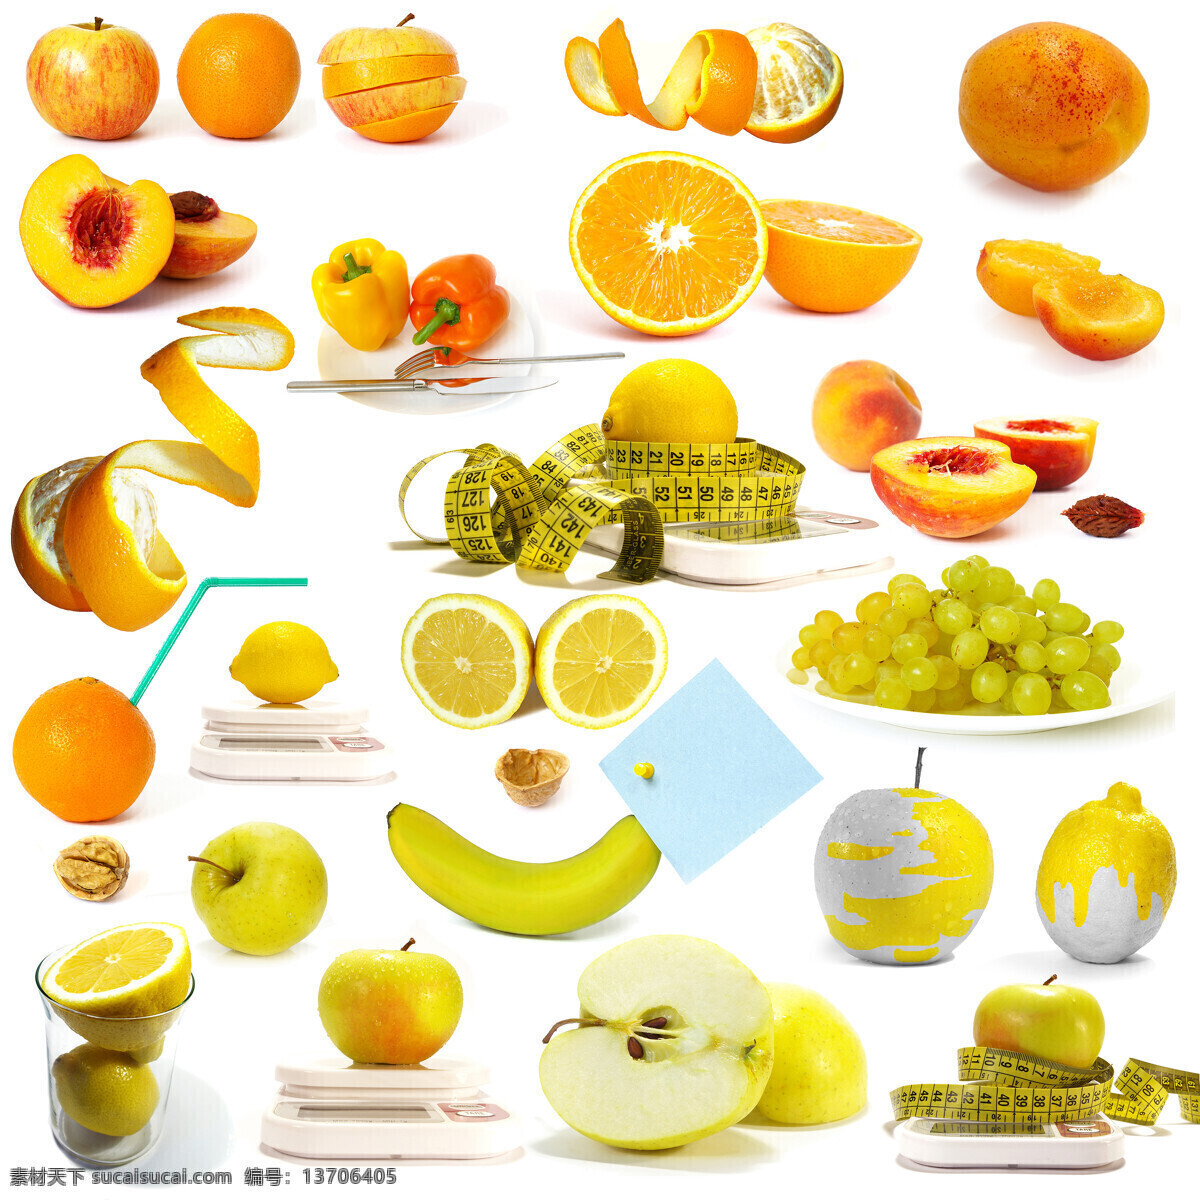 苹果 橙子 香蕉 减肥 主题 高清 水果 软尺 桃子 葡萄 彩椒 电子秤 吸管 柠檬 高清图片 白色